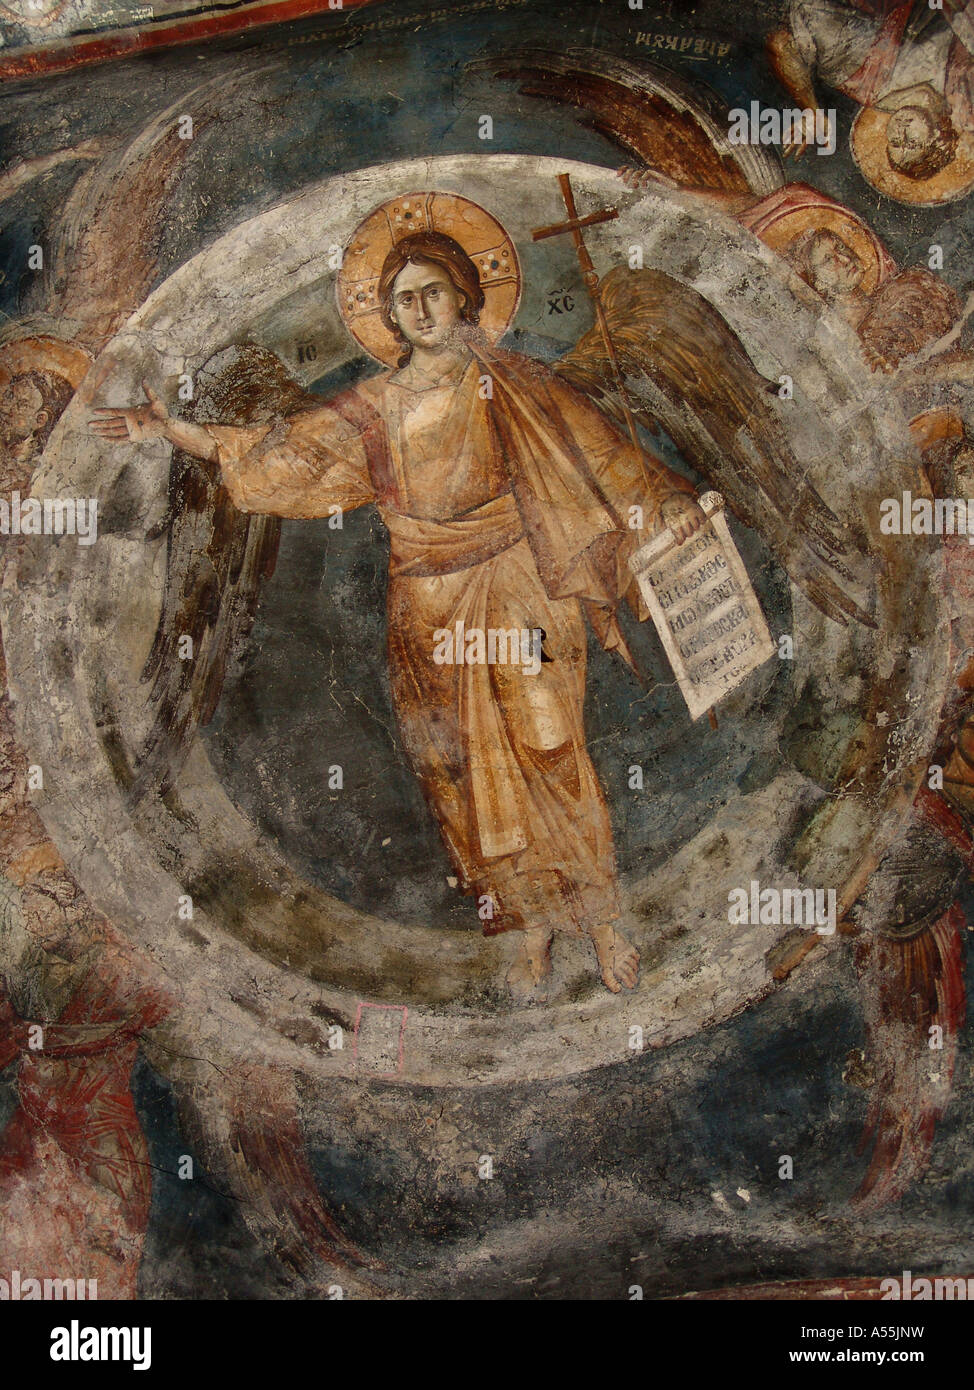 Est Painet1296 Macédoine République yougoslave arym christ créateur coupole principale 13e siècle, fresques à l'intérieur de l'église orthodoxe Saint Banque D'Images